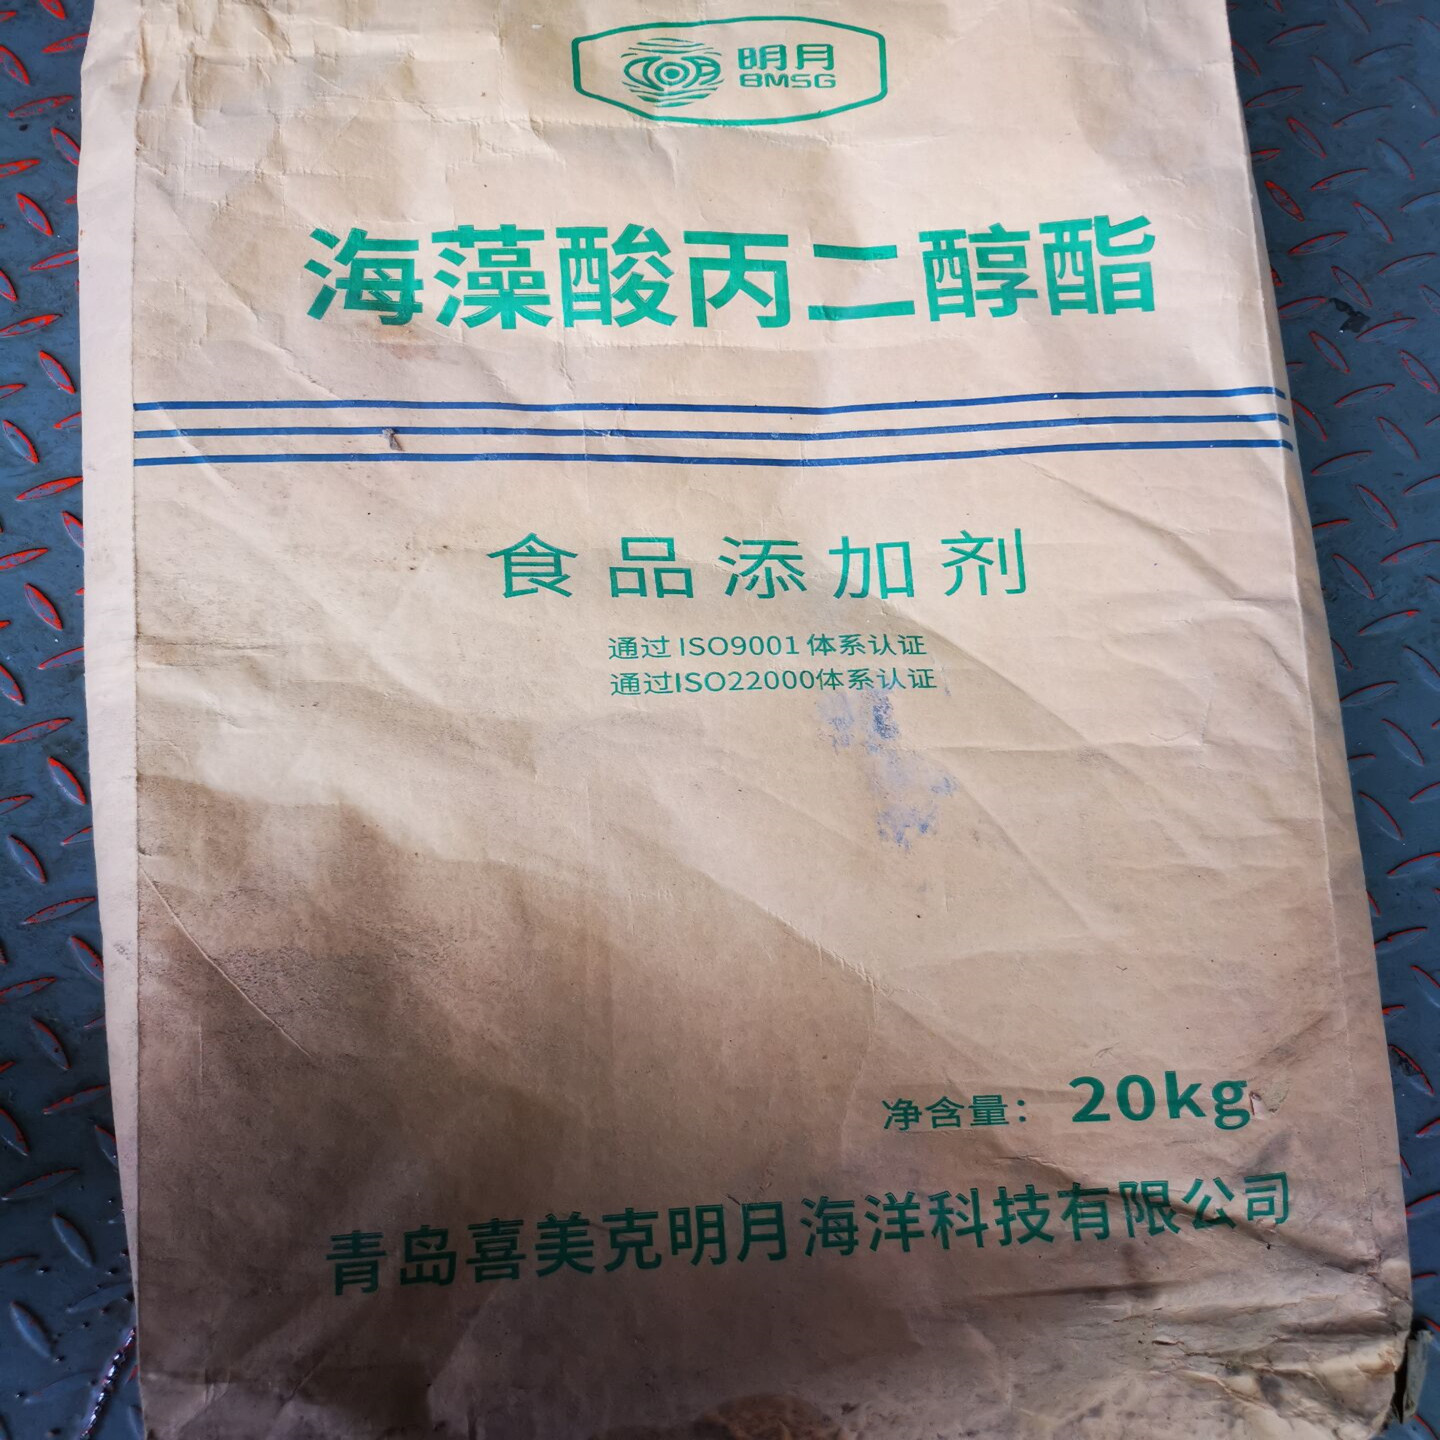 郑州市海藻酸丙二醇酯厂家明月海藻酸丙二醇酯食品级藻酸丙二酯20kg装褐藻酸丙二醇酯